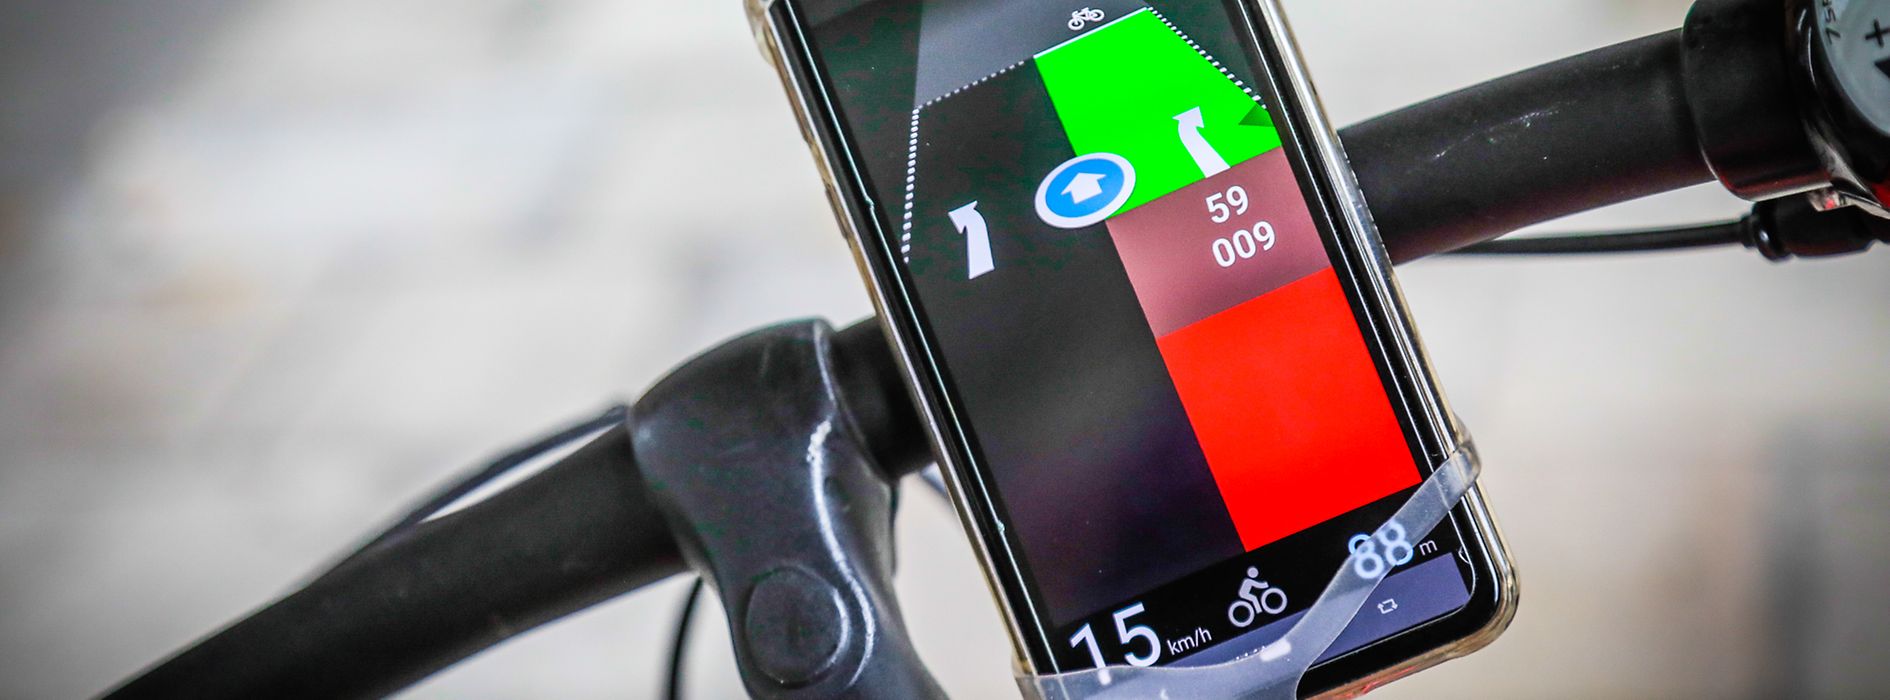 Bike App